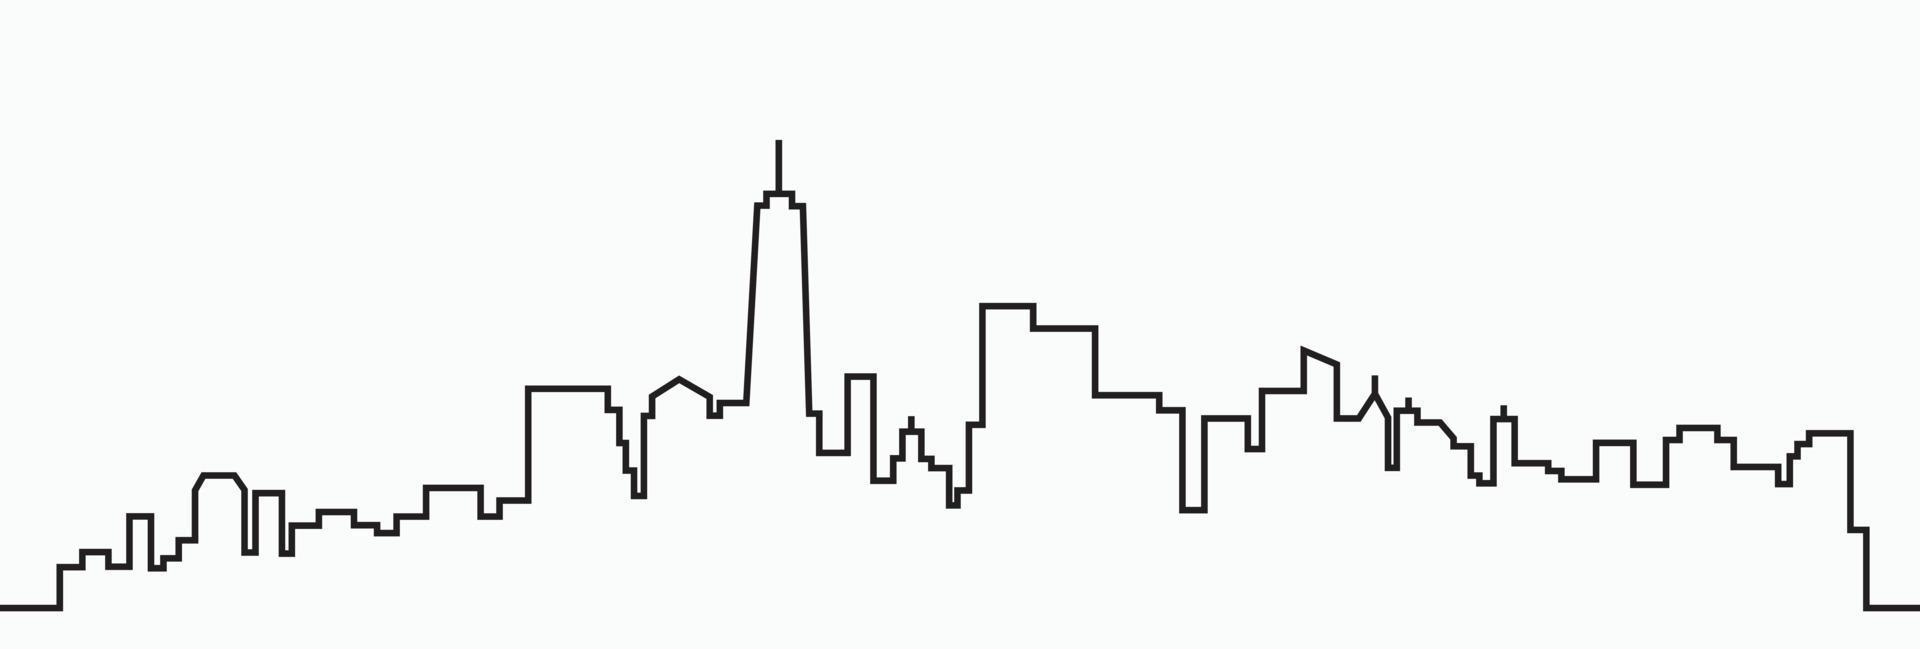 modern stad horisont översikt teckning på vit bakgrund. vektor